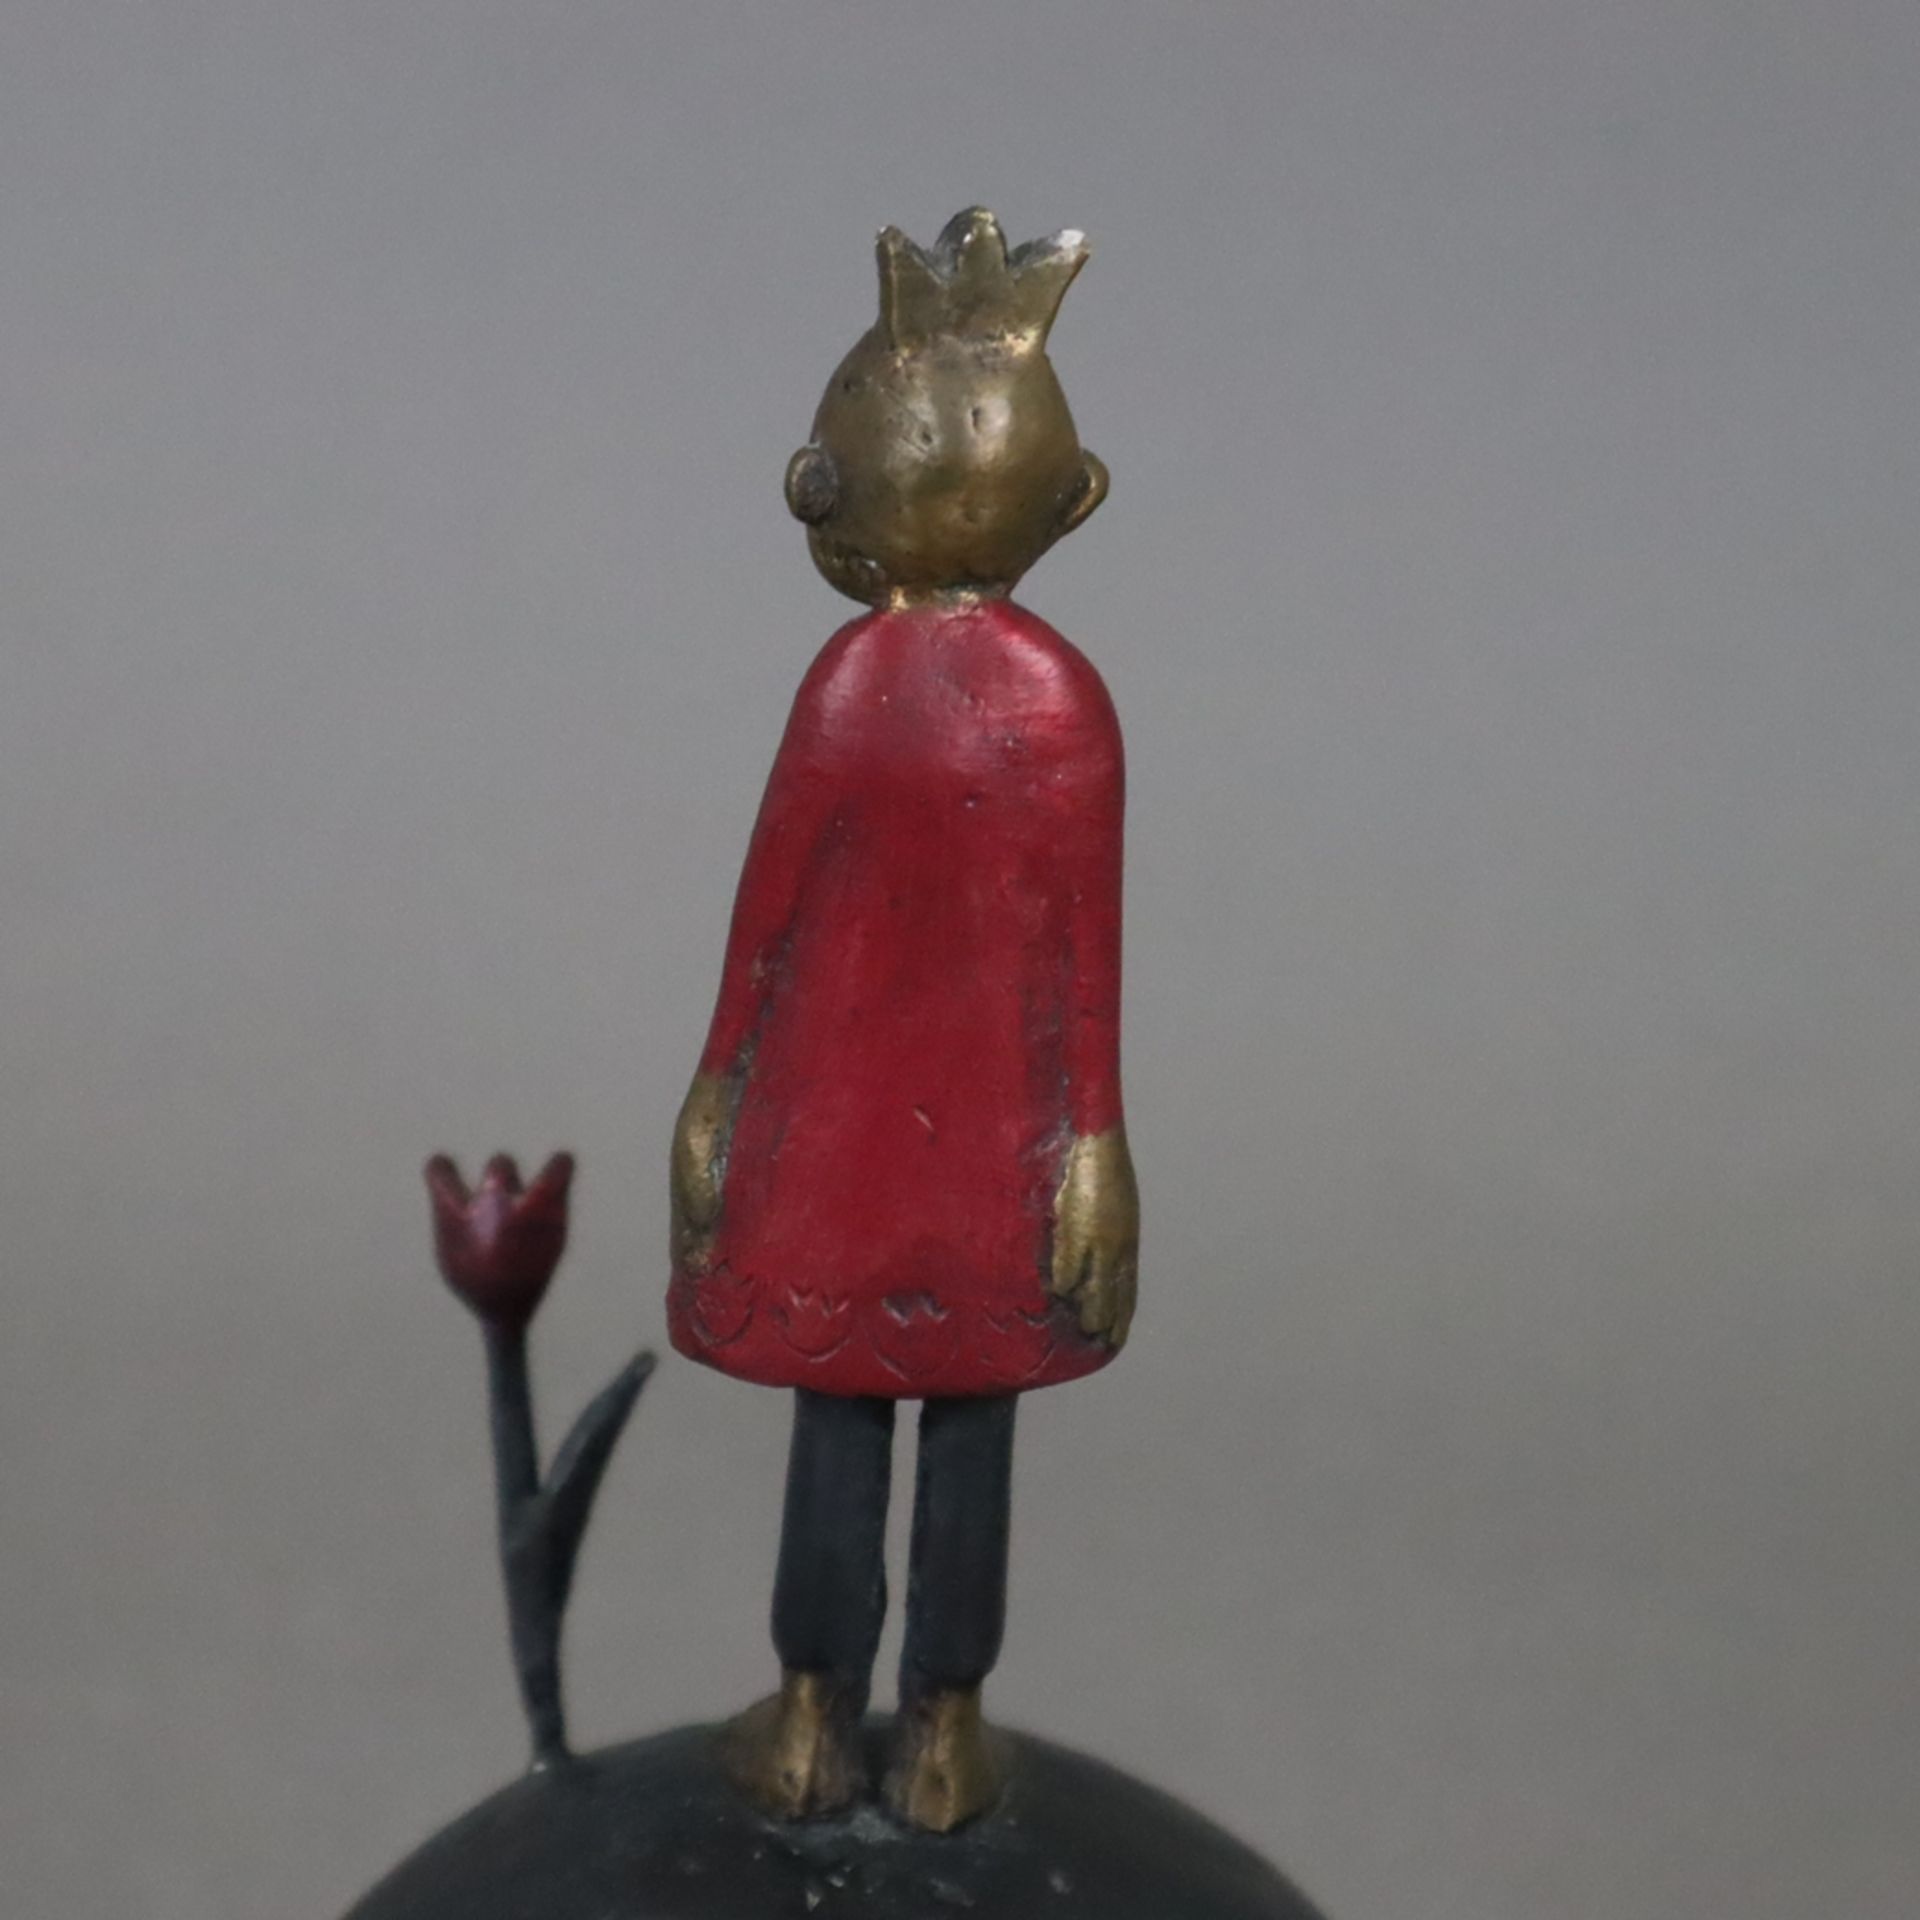 Suhr, Tamara (*1968) - Der kleine Prinz, Bronze, teils dunkel patiniert, partiell rot bemalt, monog - Image 6 of 7